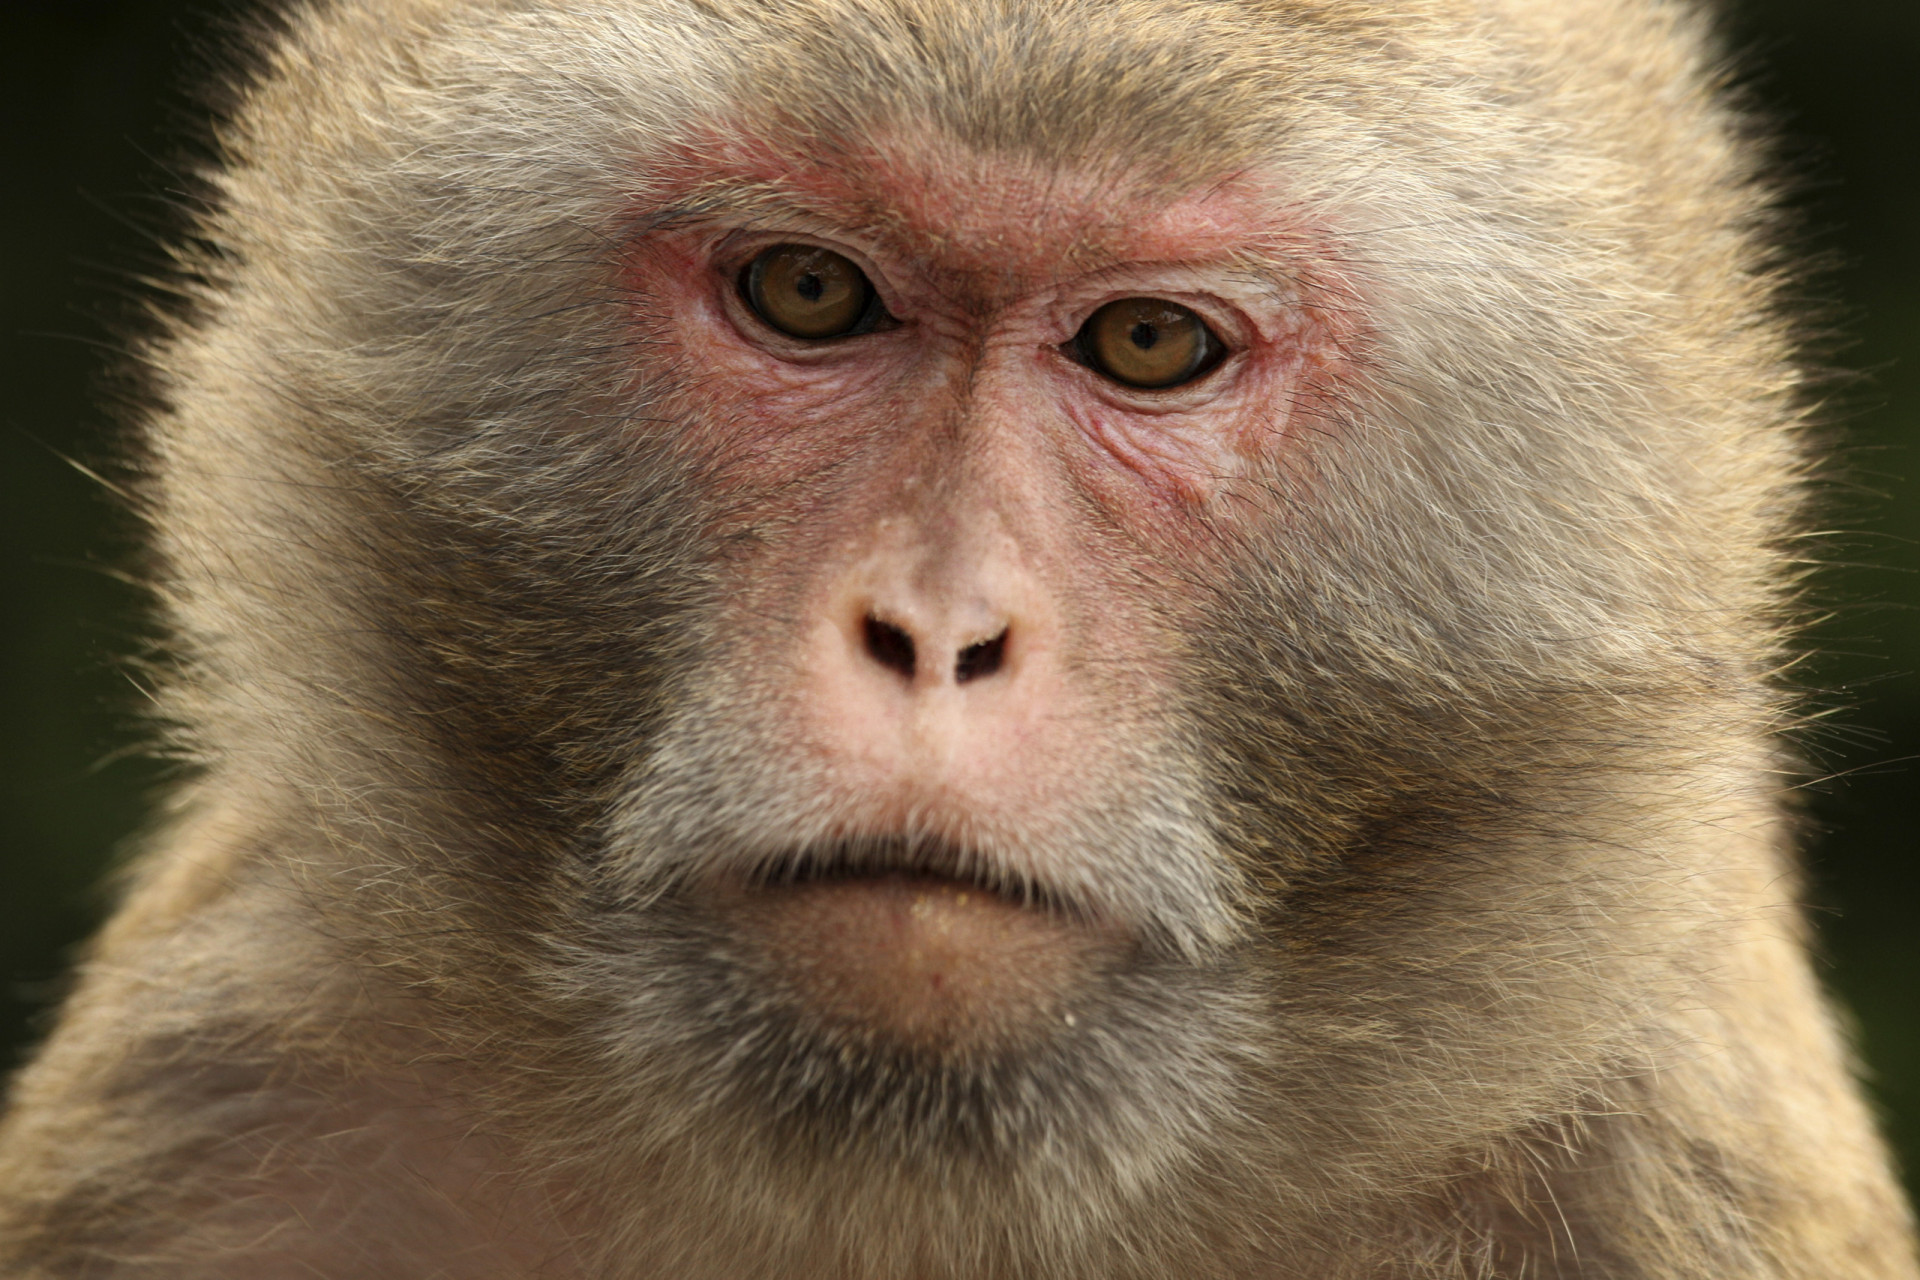 <p>Apodada "Monkey Island", esta isla es el hogar de aproximadamente 4000 macacos Rhesus. Sin embargo, no son una especie autóctona, sino que fueron traídos a la isla desde Puerto Rico en 1979 debido a la propagación del herpes B. Antes del traslado de los monos, la isla estaba desierta. Hoy en día, solo los investigadores del National Institute of Allergy and Infectious Diseases pueden acceder a ella.</p>